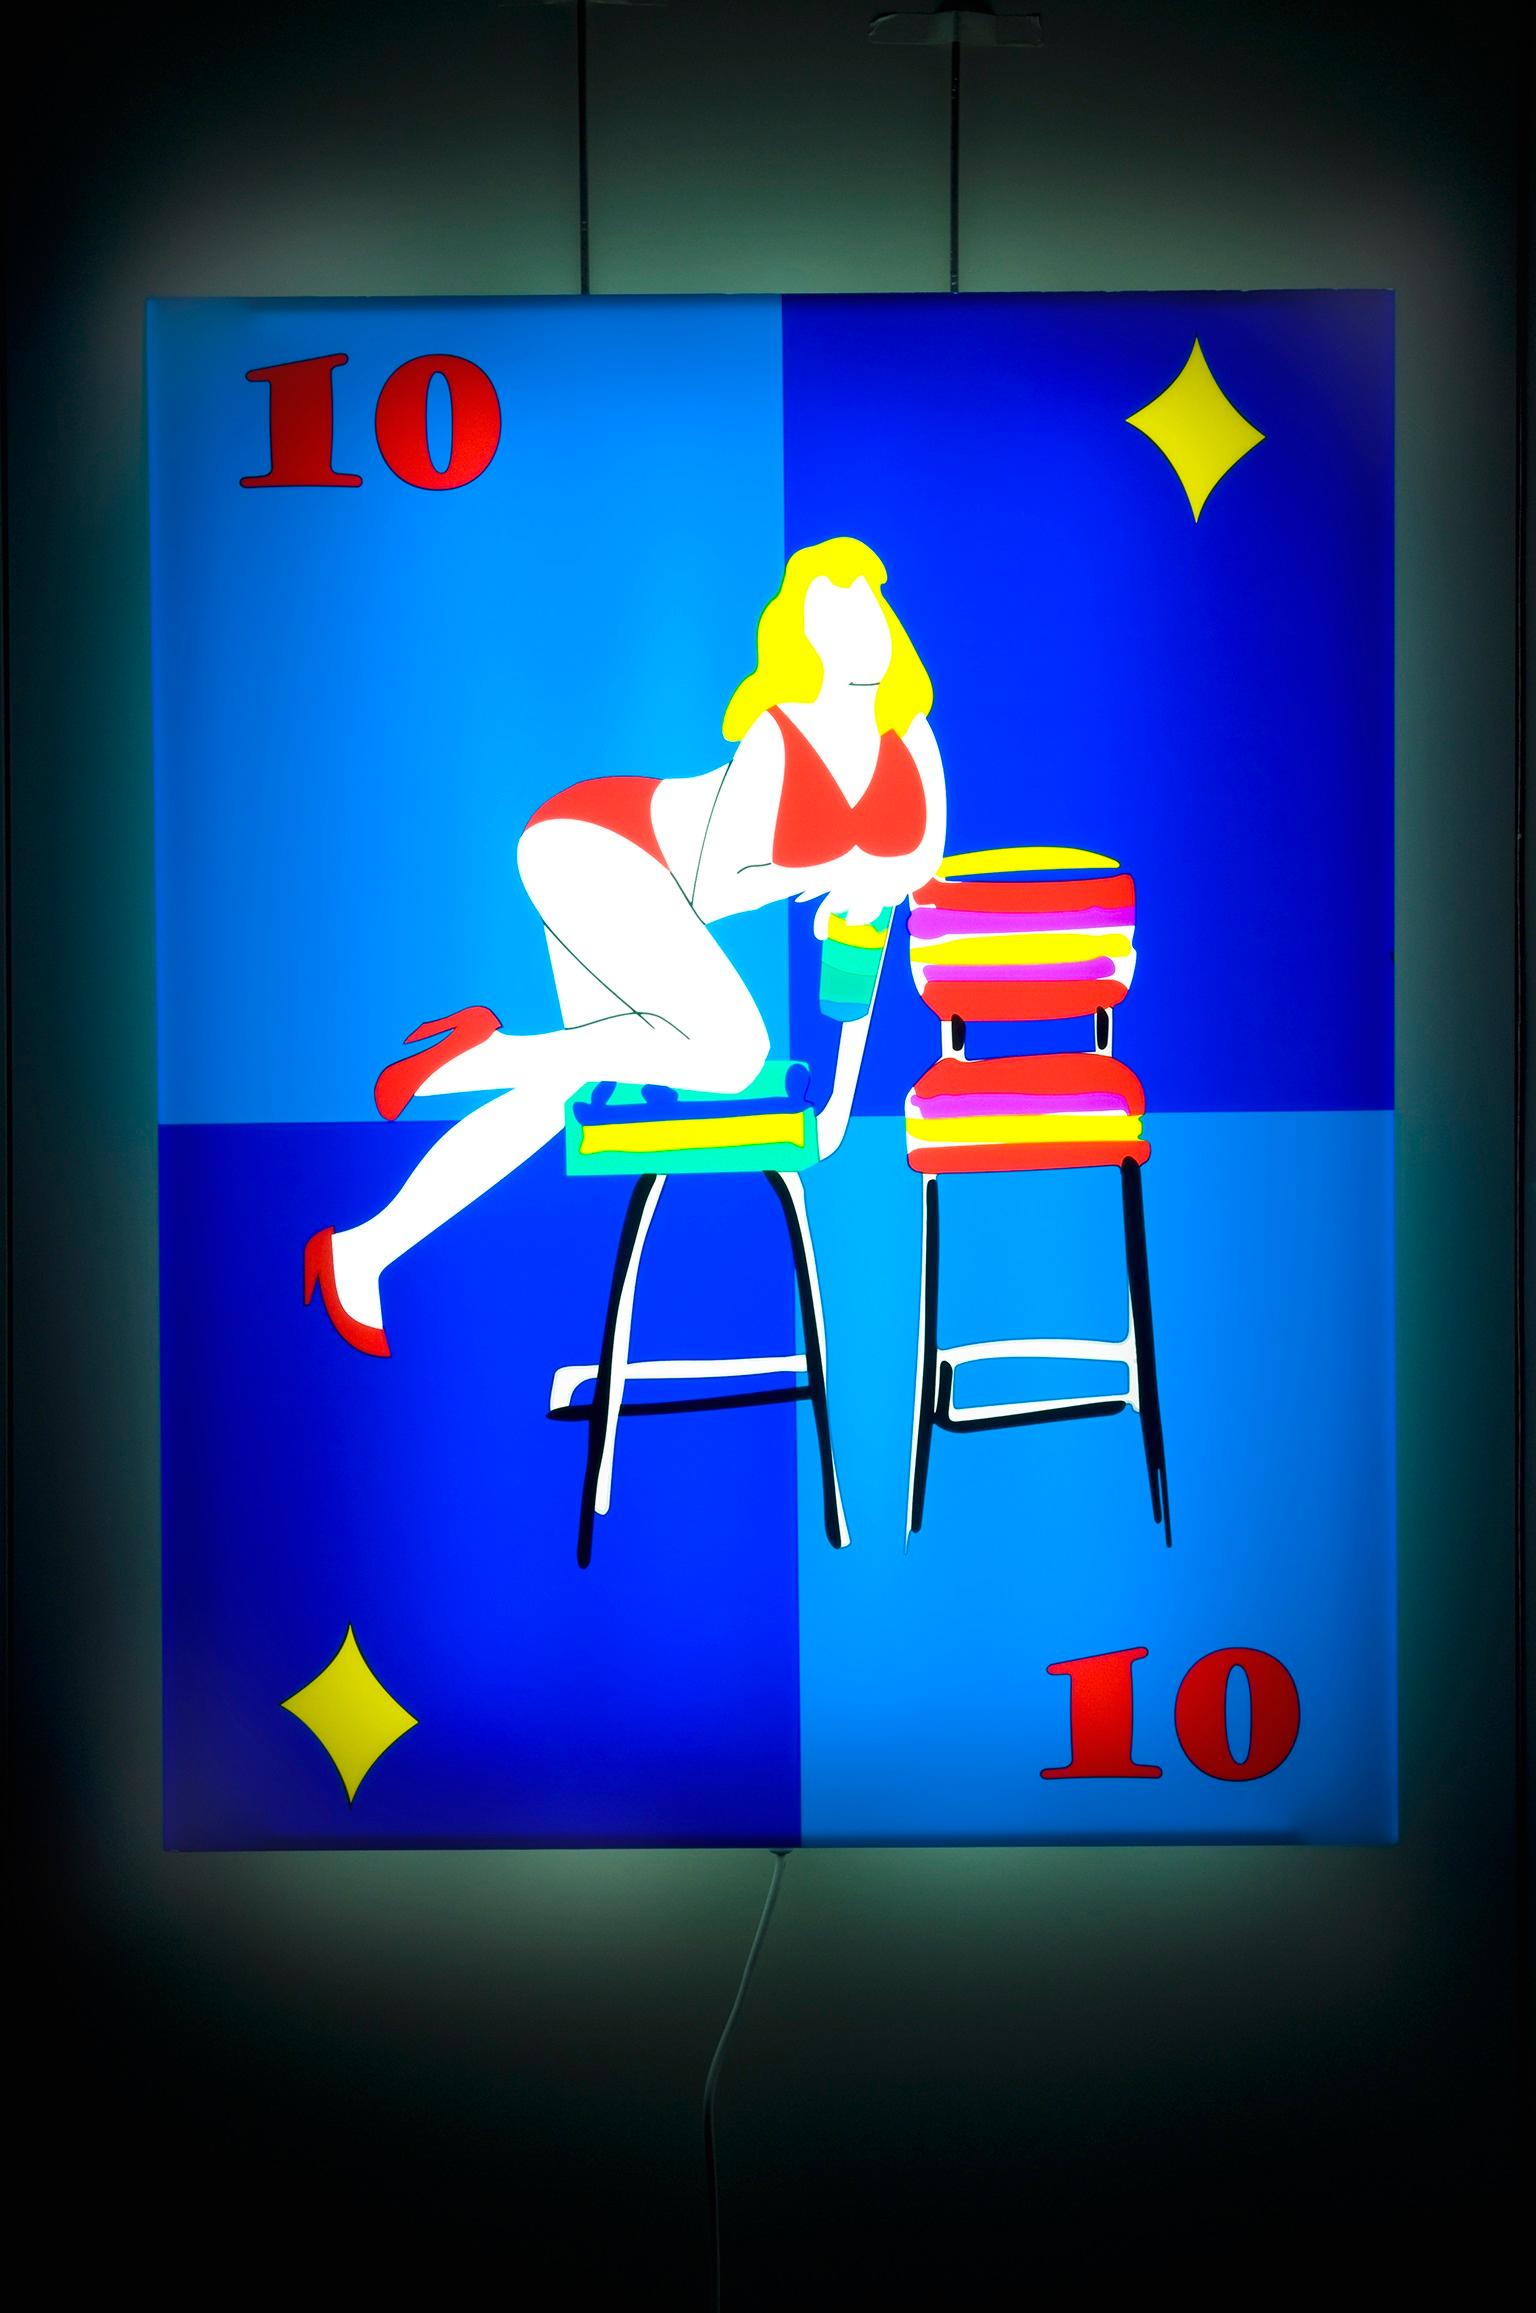 Edition de 7 pièces uniques plus 2 PA, faisant partie de la collection spéciale de 10 sujets différents de cartes à jouer.
